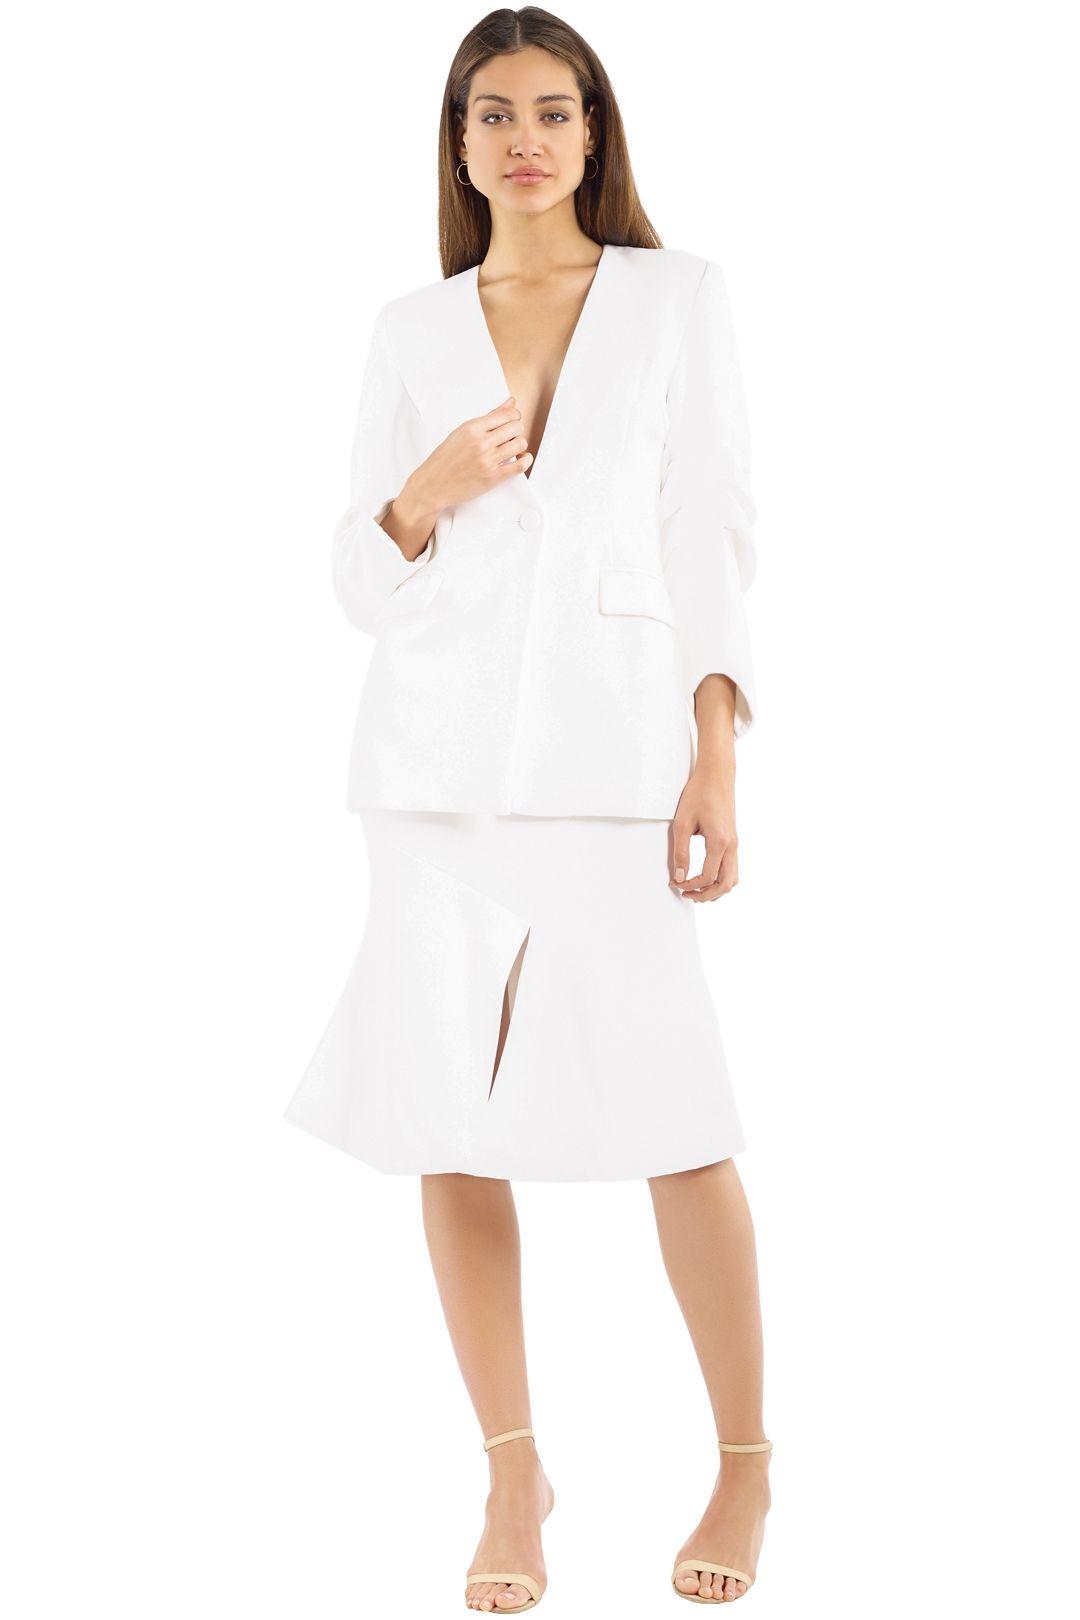 Elliatt - Plaza Blazer and Skirt Set - White - Front